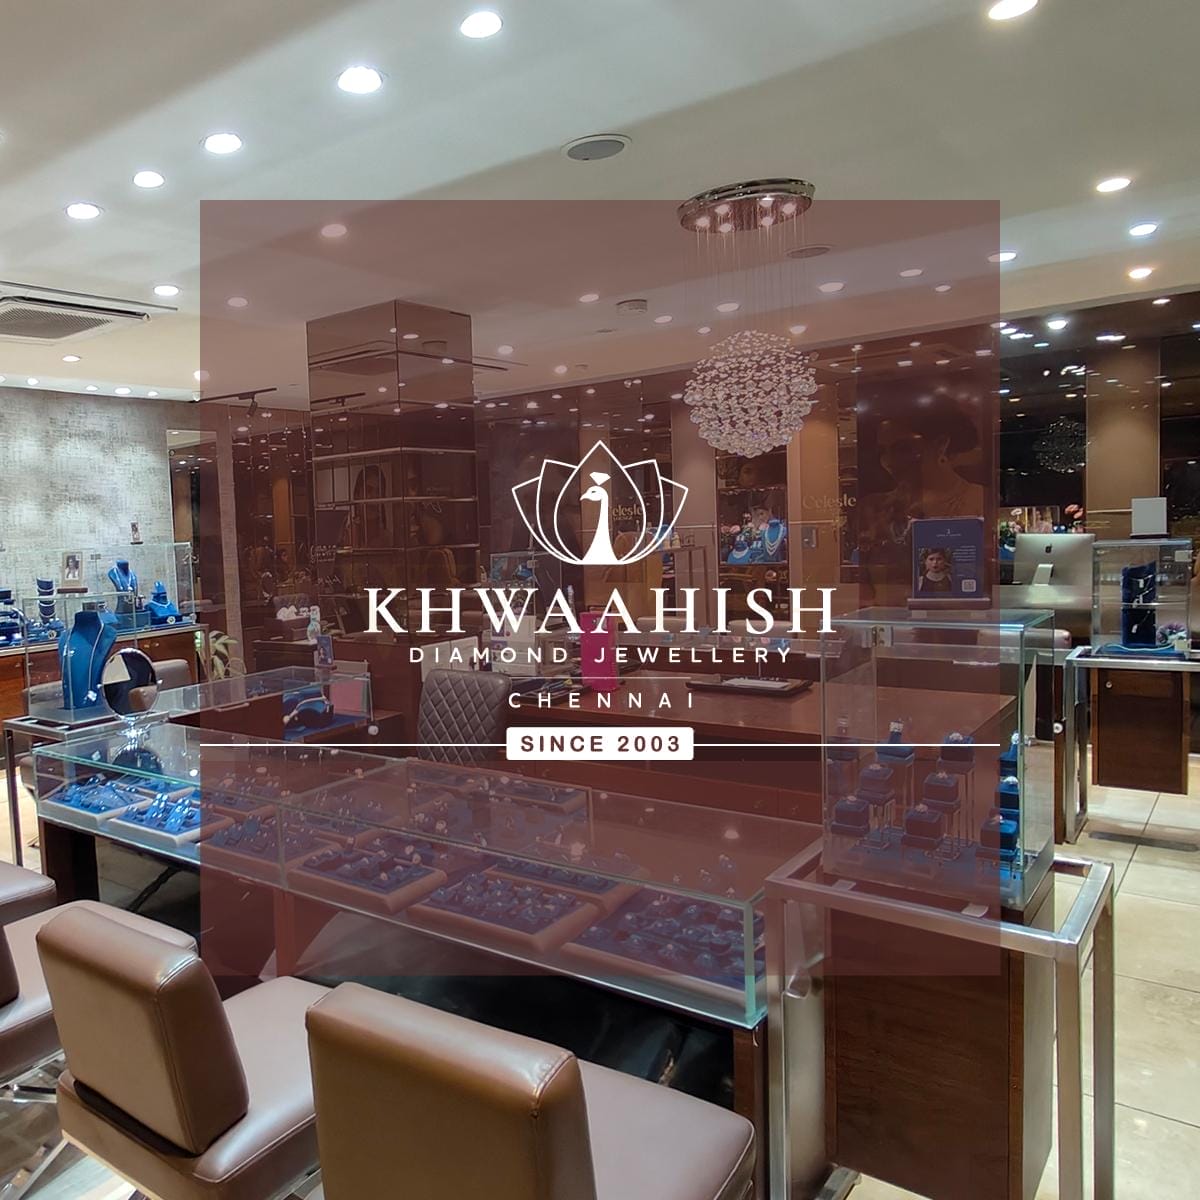 Interior image of Khwaahish showroom.